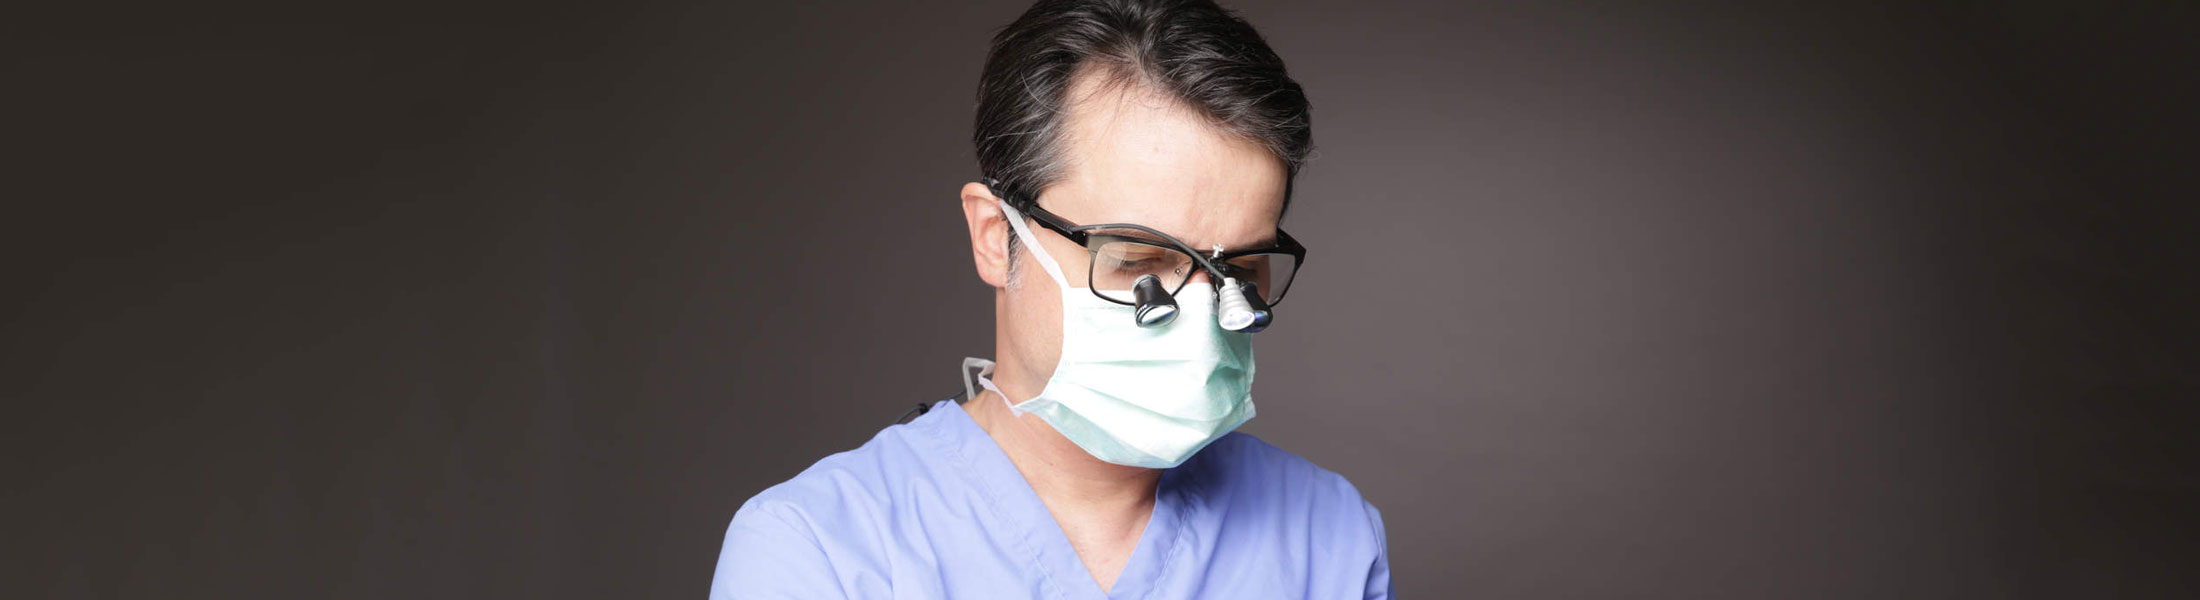 Dr. med. dent. Marcus Klein - Spezialist für  Implantate